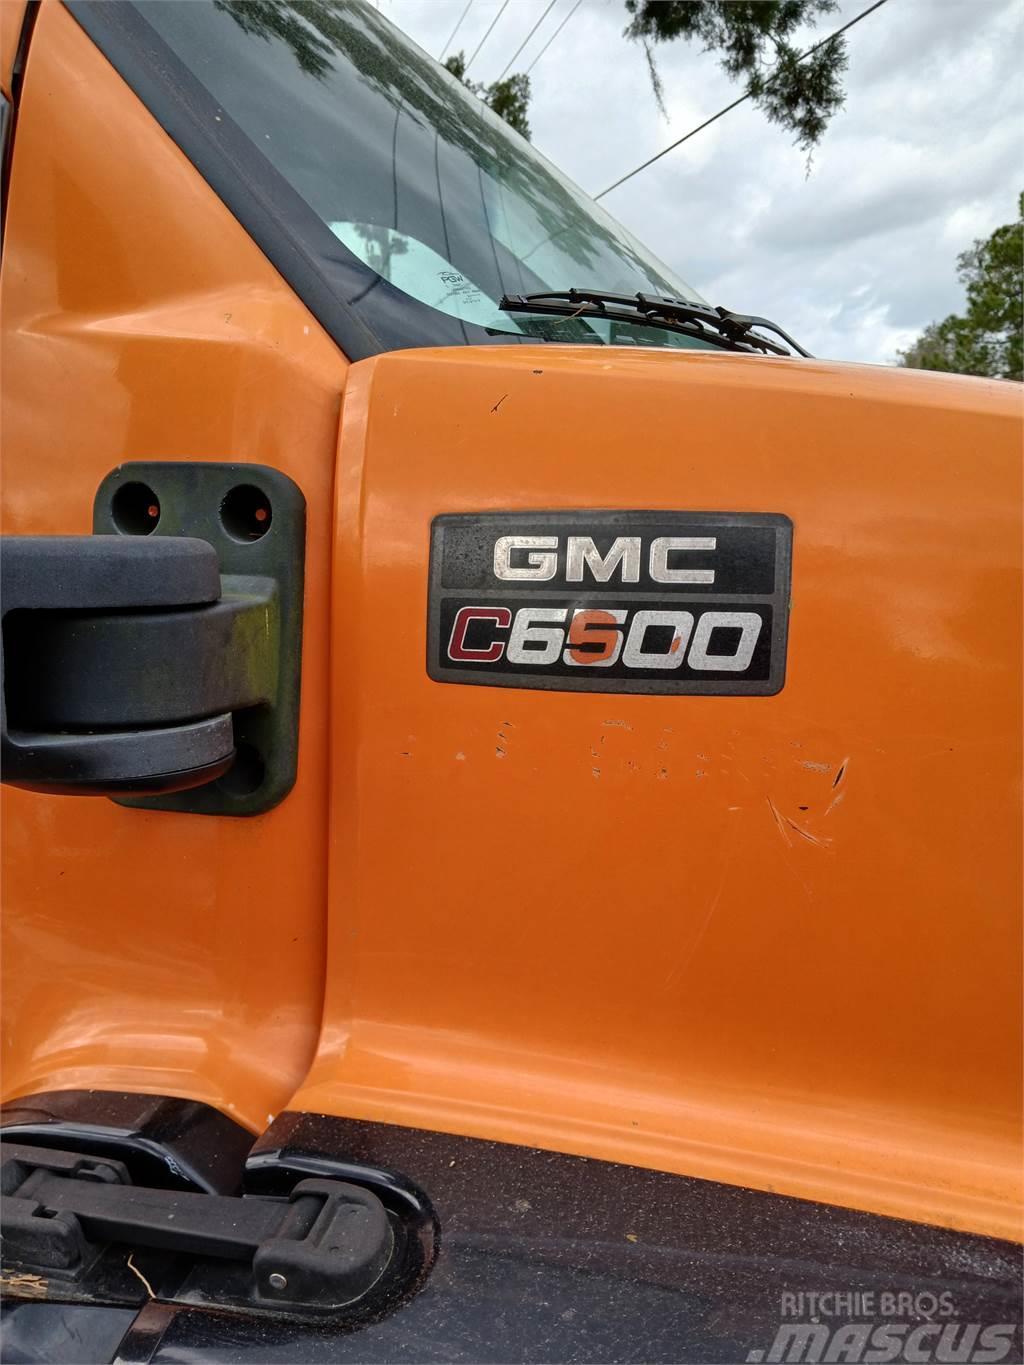 GMC C6500 Deszkaszállító teherautók